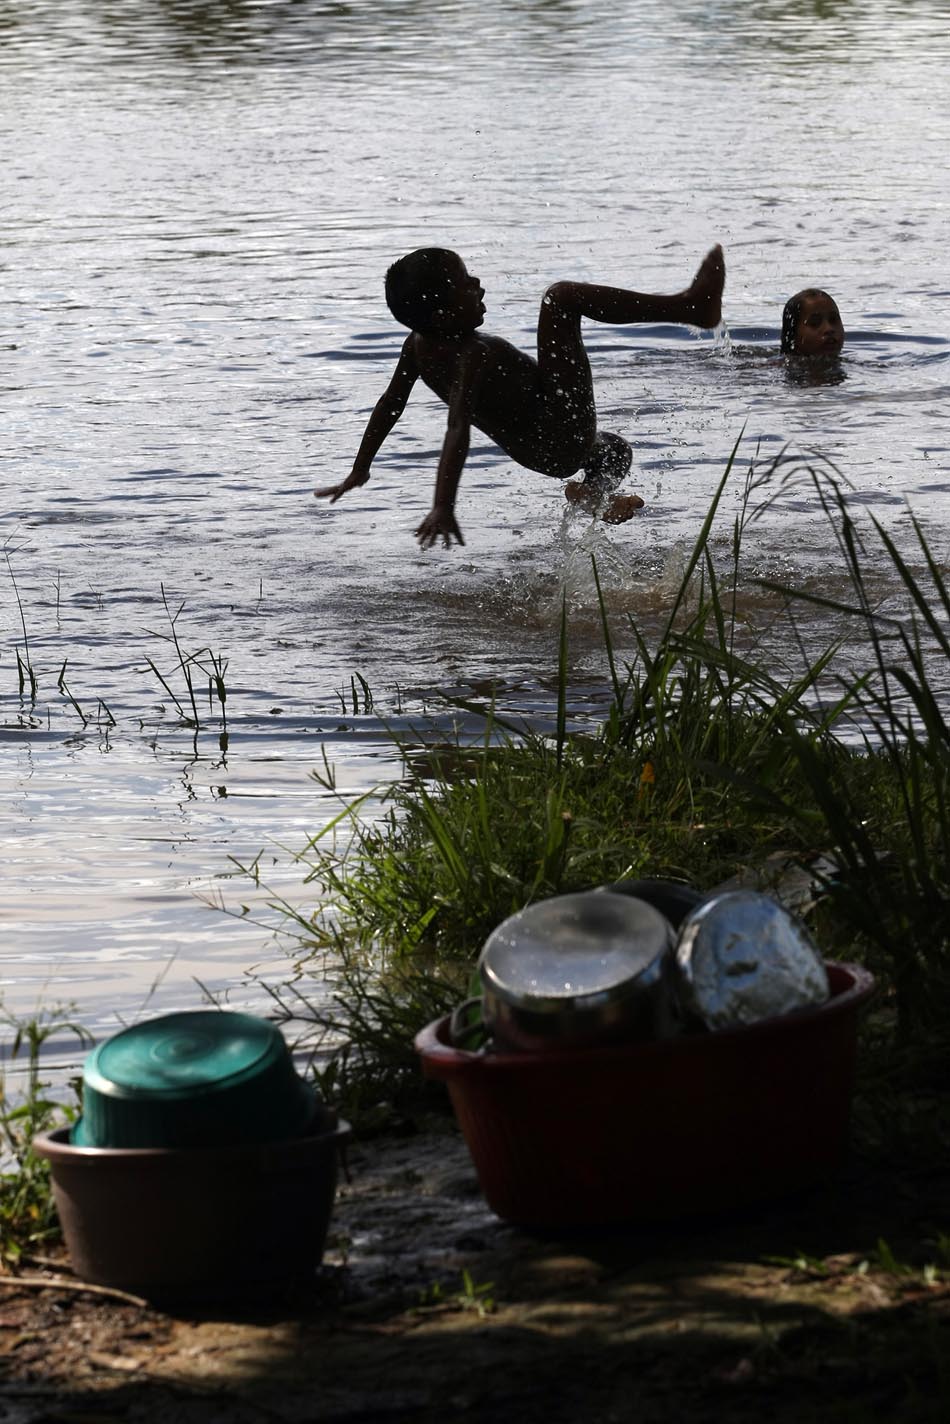 Crianças brincam em braço do Rio Xingu no distrito de Santo Antônio. Vitória de Xingu, PA, 14/04/2010. FOTO: HÉLVIO ROMERO/AE